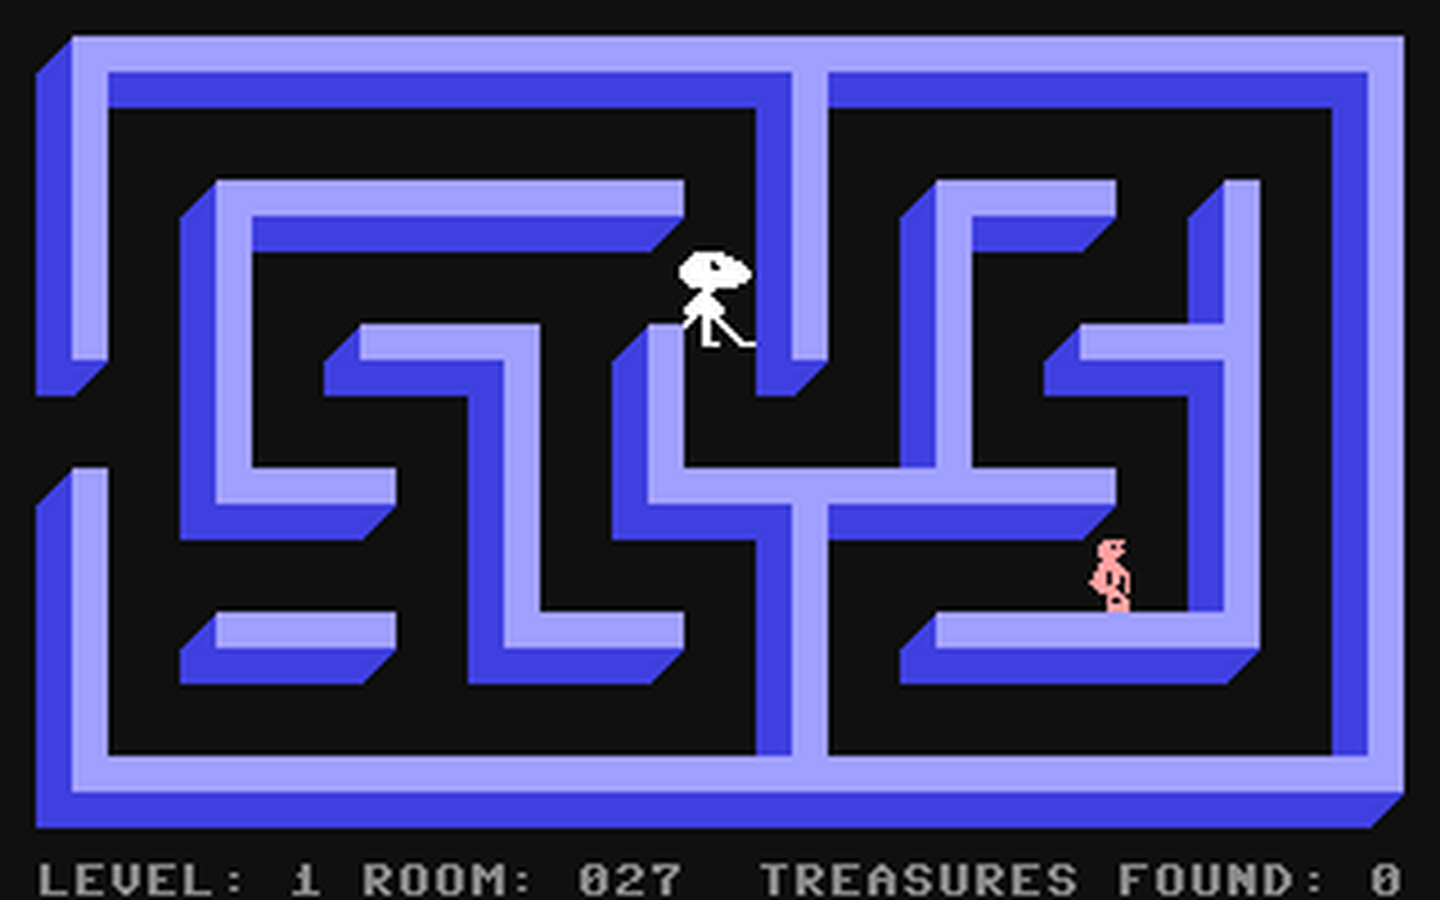 C64 GameBase Tyler's_Dungeons TSI_(Turbo_Software,_Inc.)/Creative_Equipment 1983